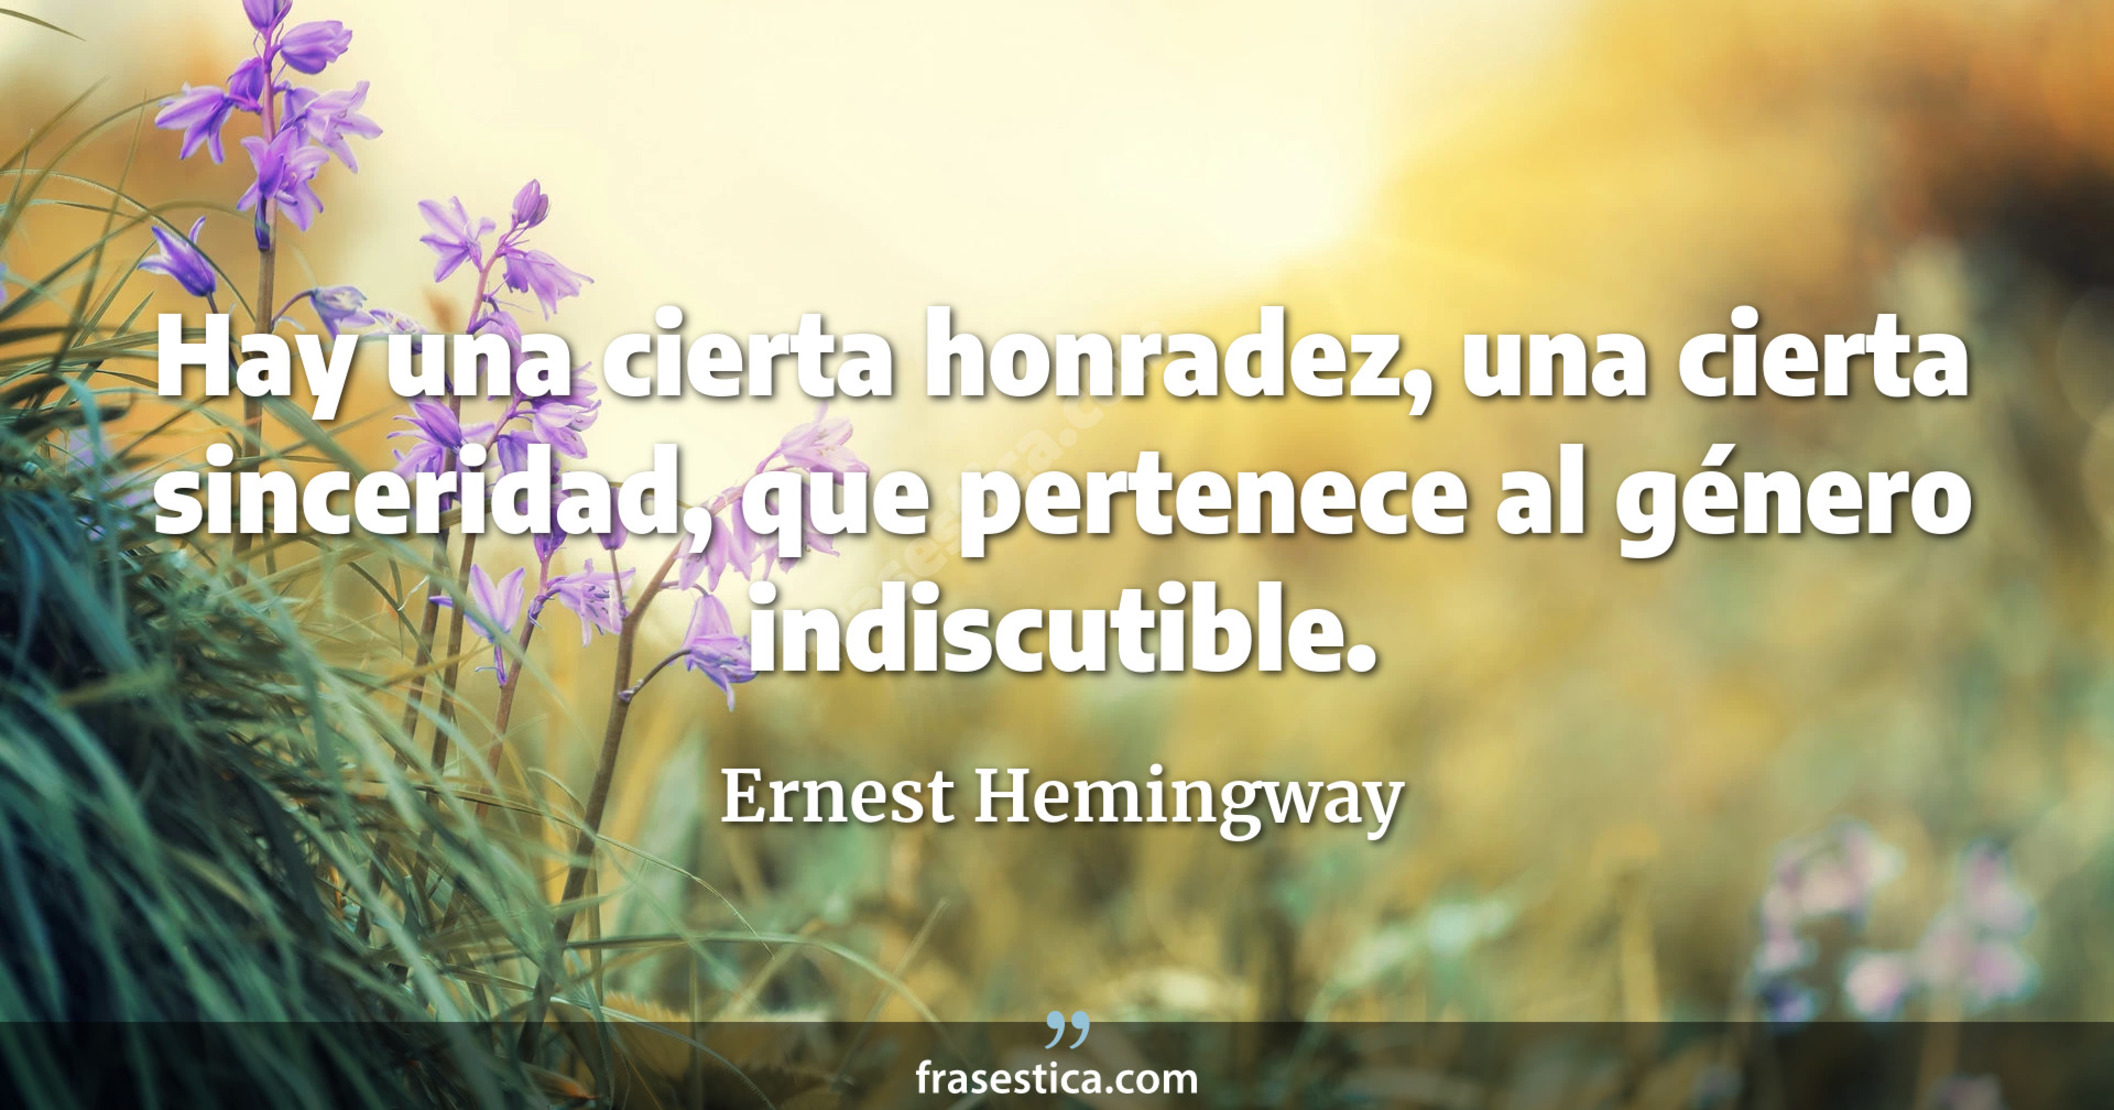 Hay una cierta honradez, una cierta sinceridad, que pertenece al género indiscutible. - Ernest Hemingway